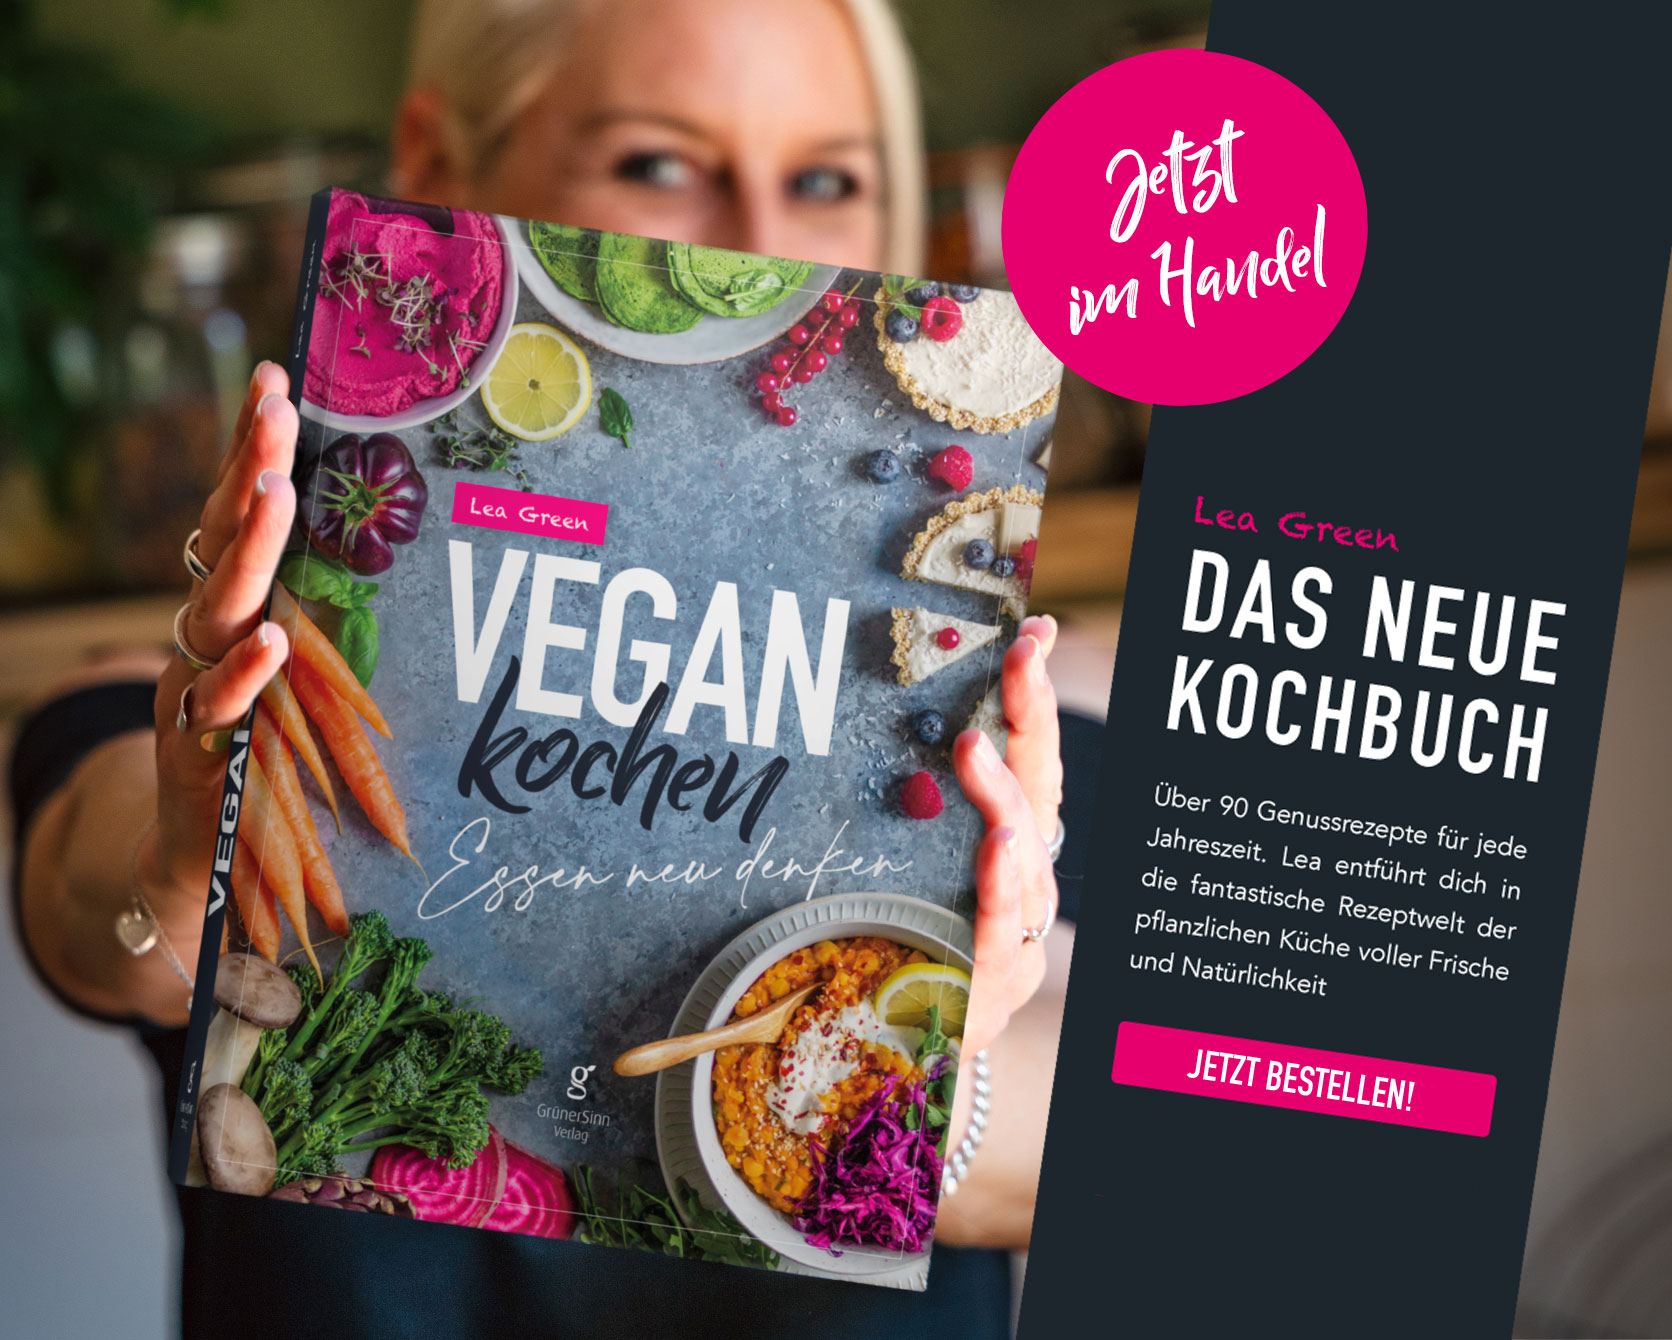 Vegan Kochen - Essen neu denken, das vegane Kochbuch von Lea Green